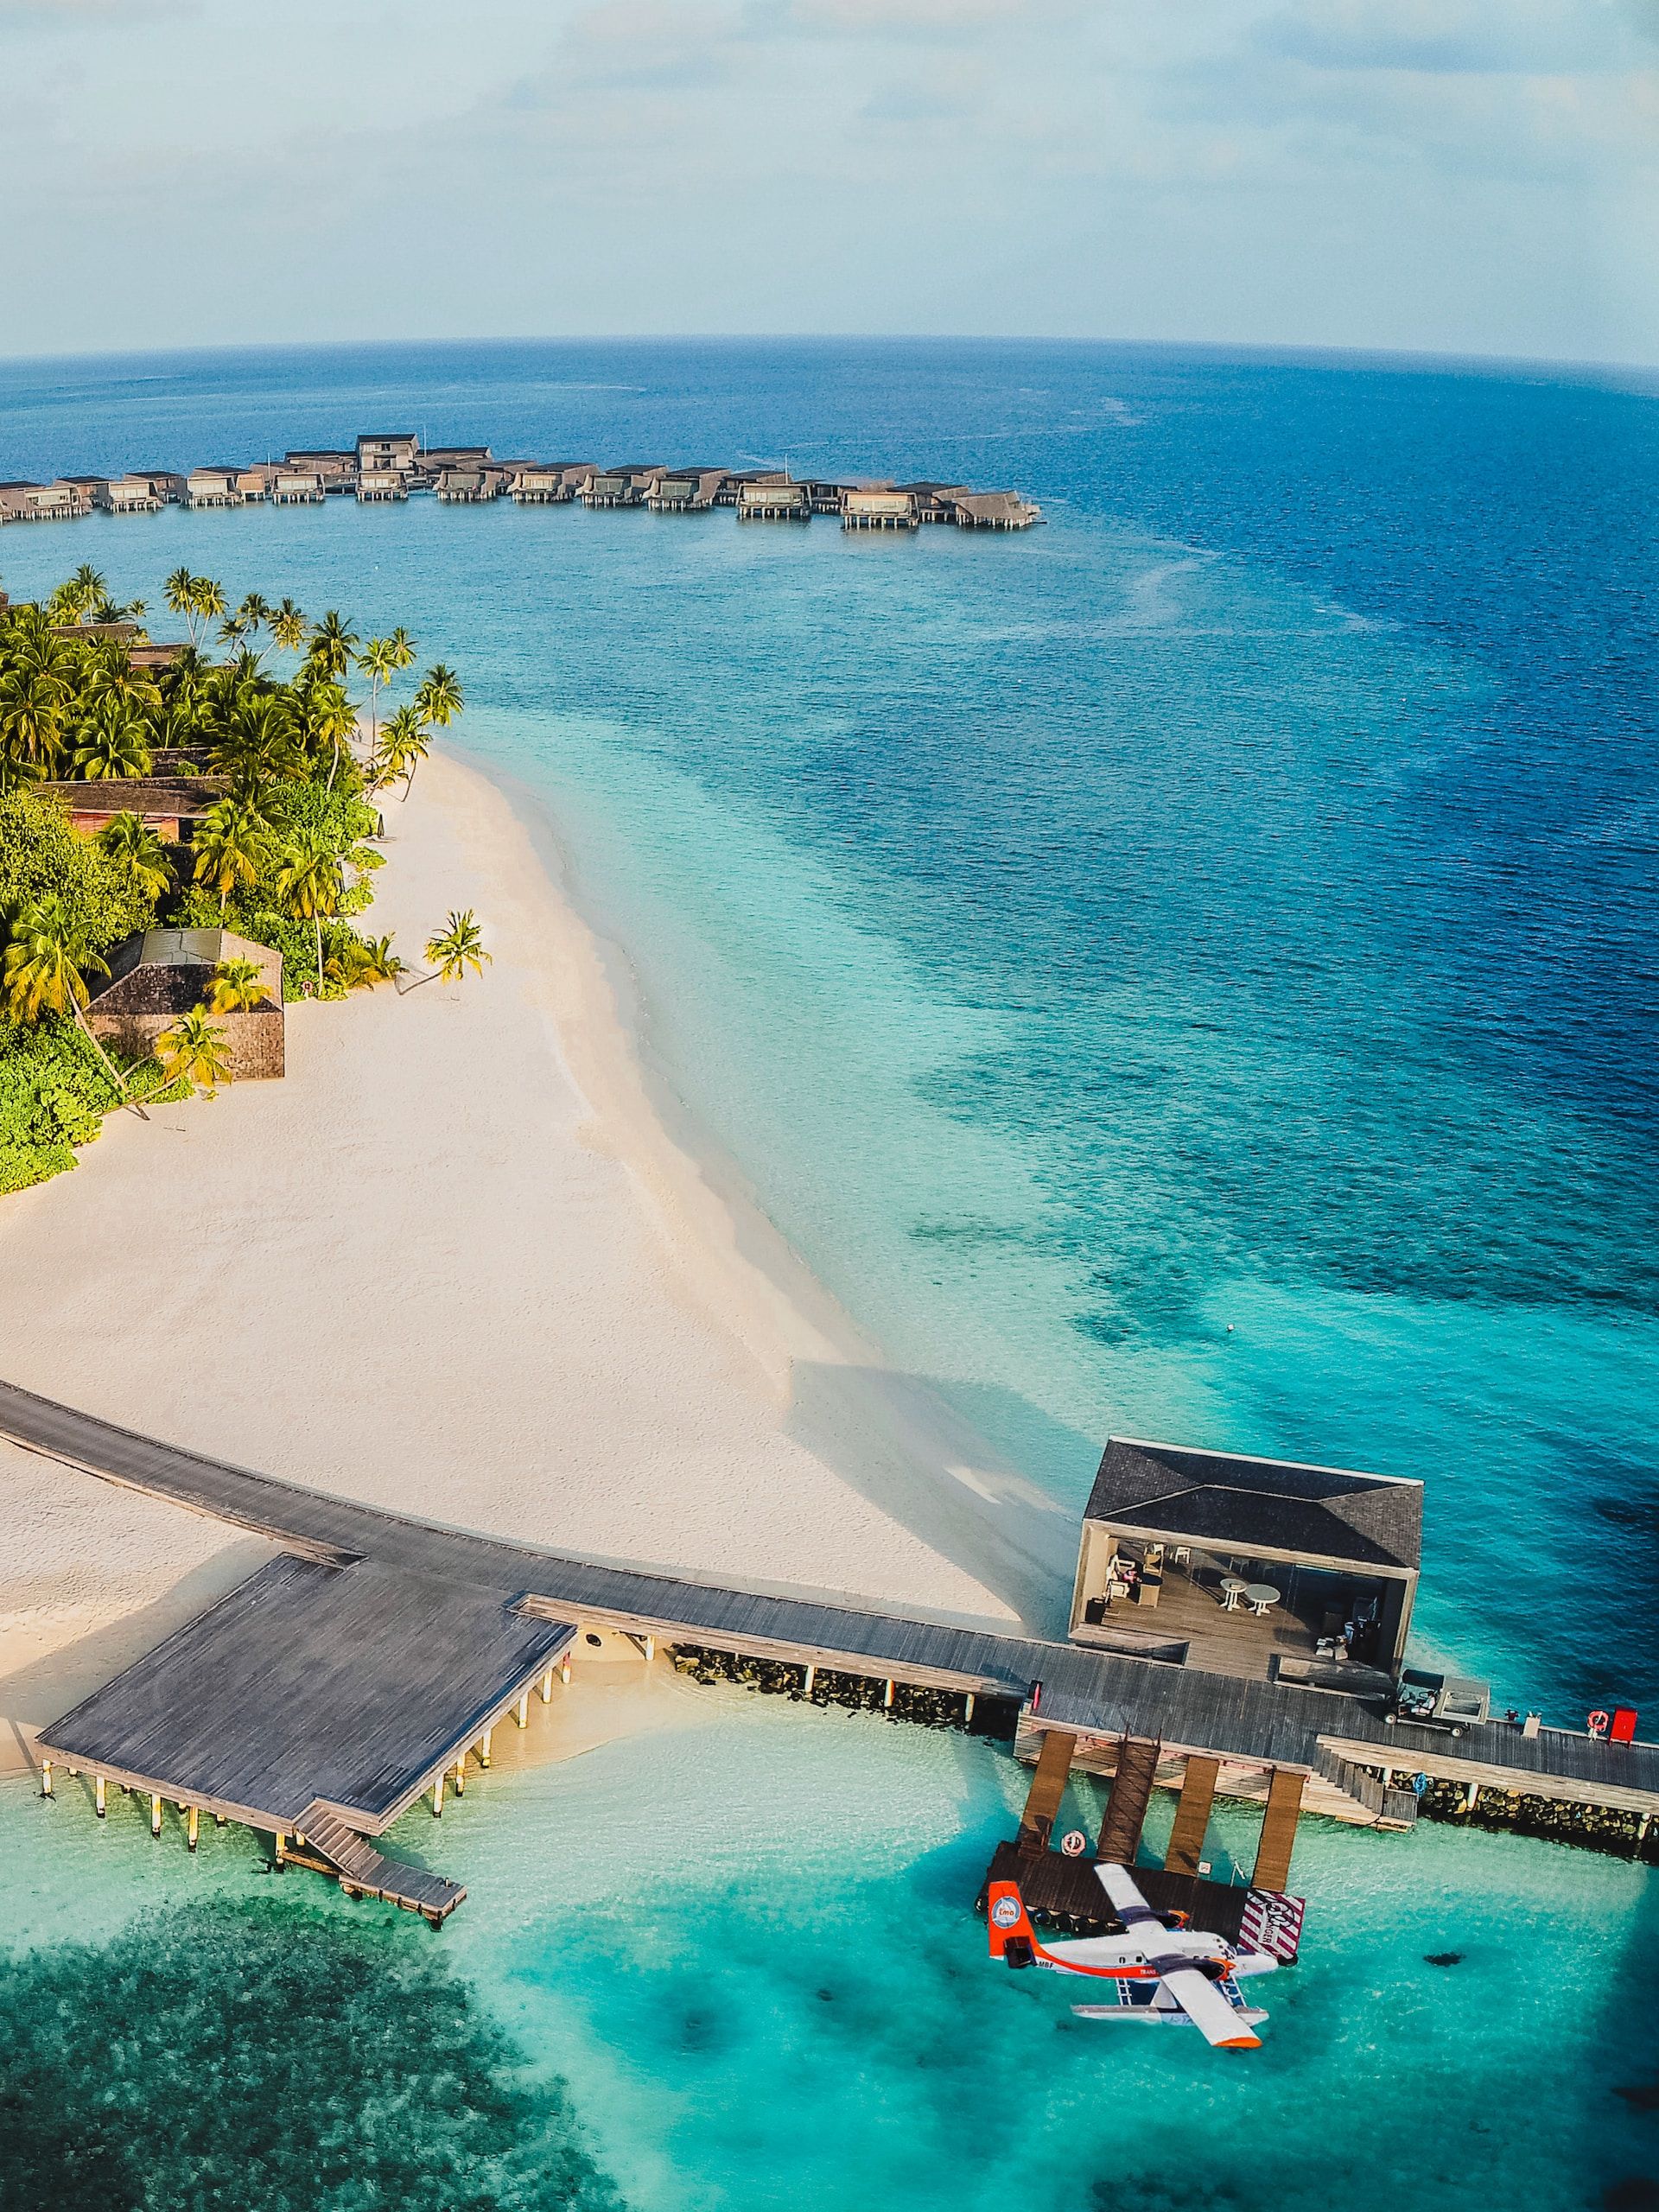  The St. Regis Maldives Vommuli Resort, Dhaalu Atoll, Maldives